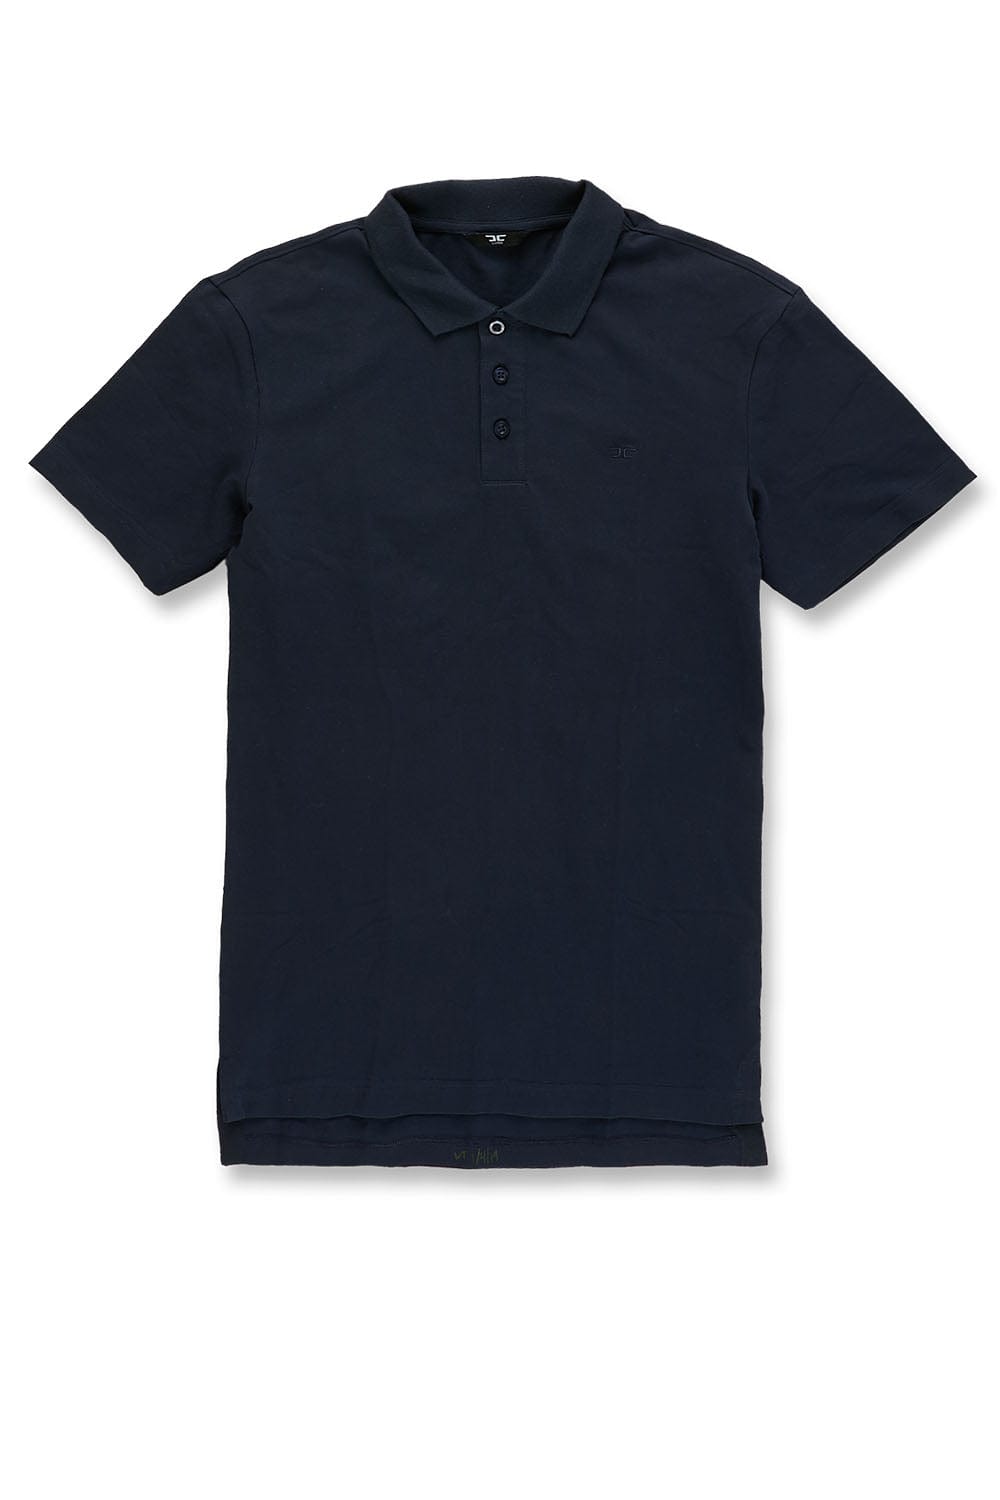 Jordan Craig Premium Pique Polo Shirt (Navy) S / Navy